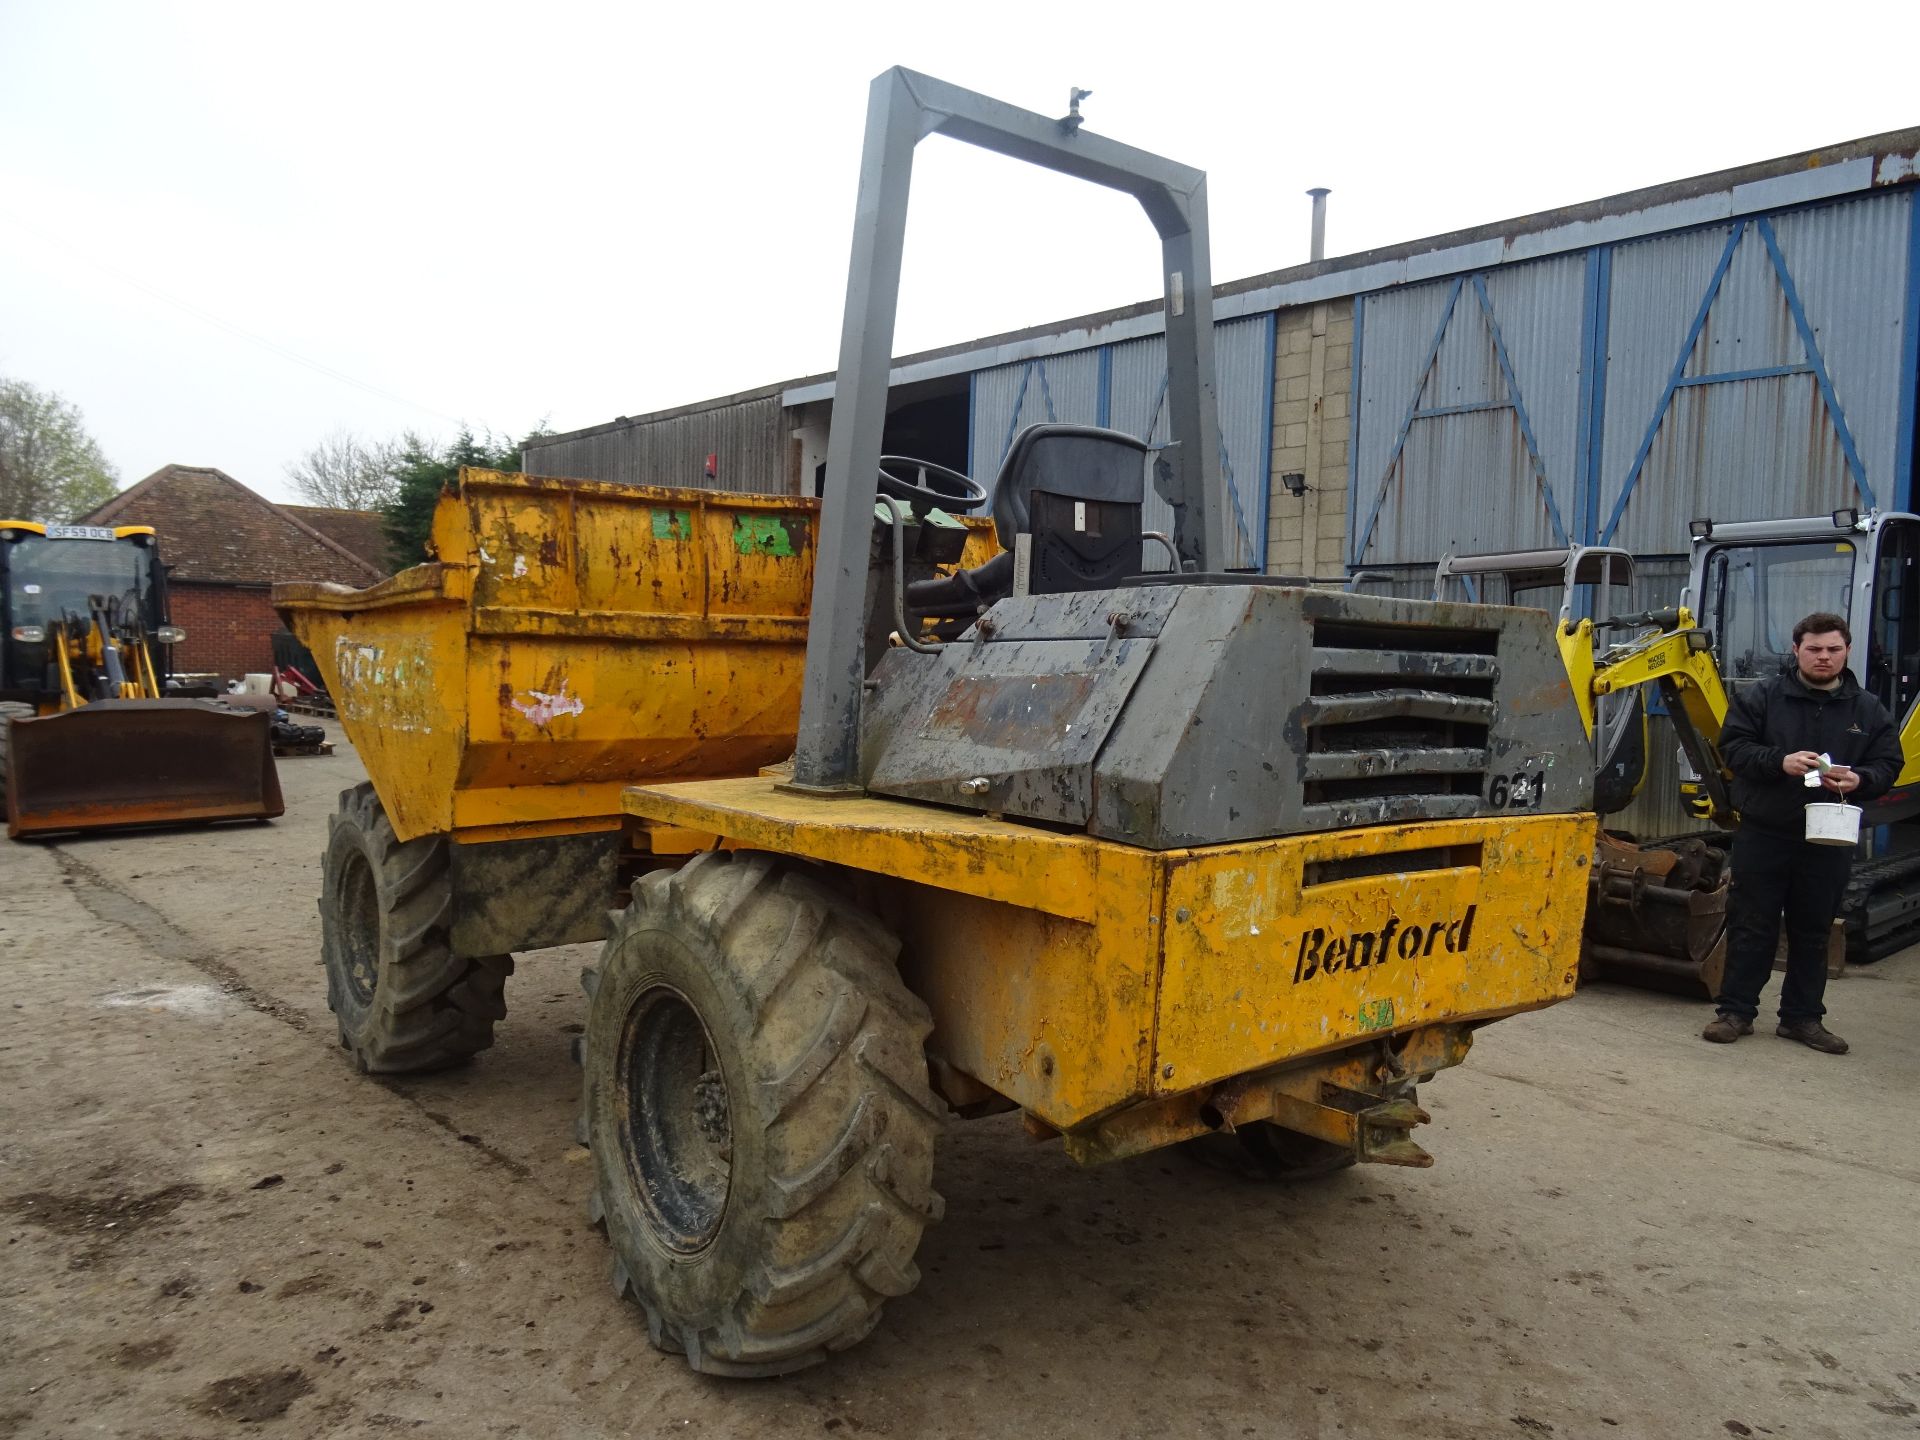 Benford 6 tonne dumper - Image 3 of 4